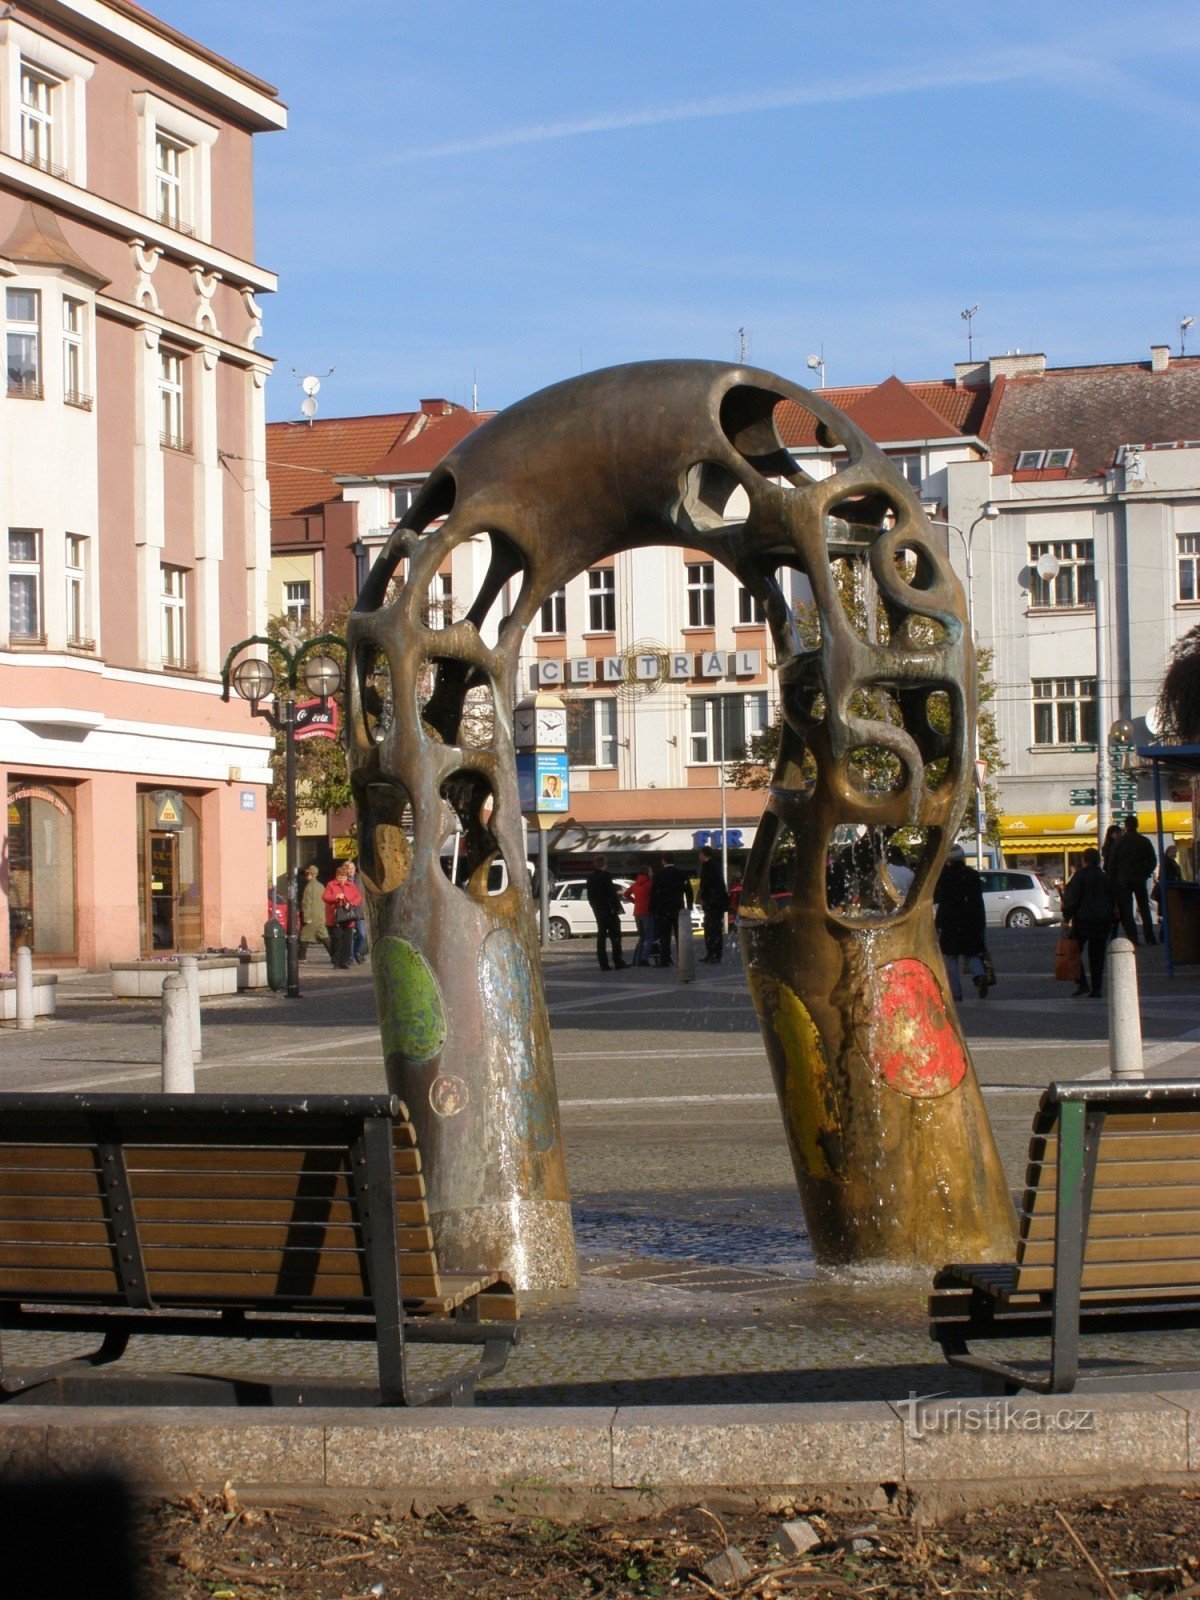 Градец Кралове - фонтан на площі Батька